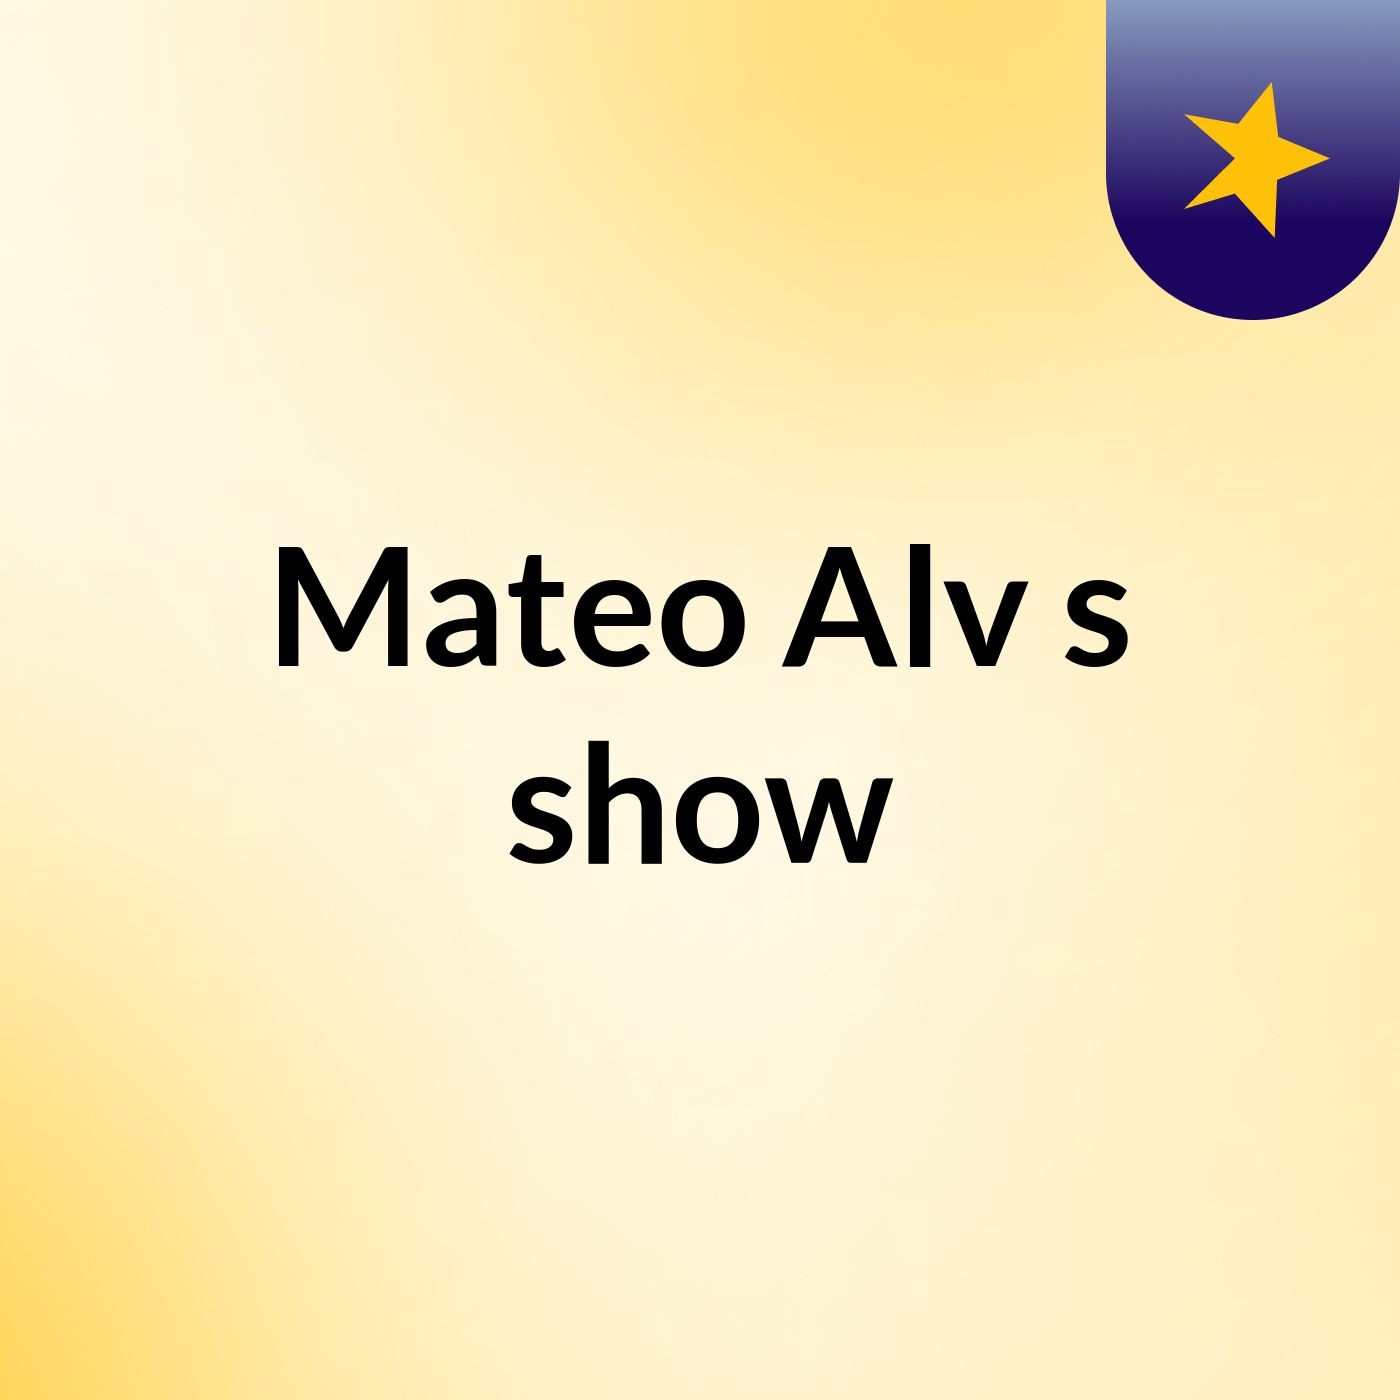 Mateo Alv's show